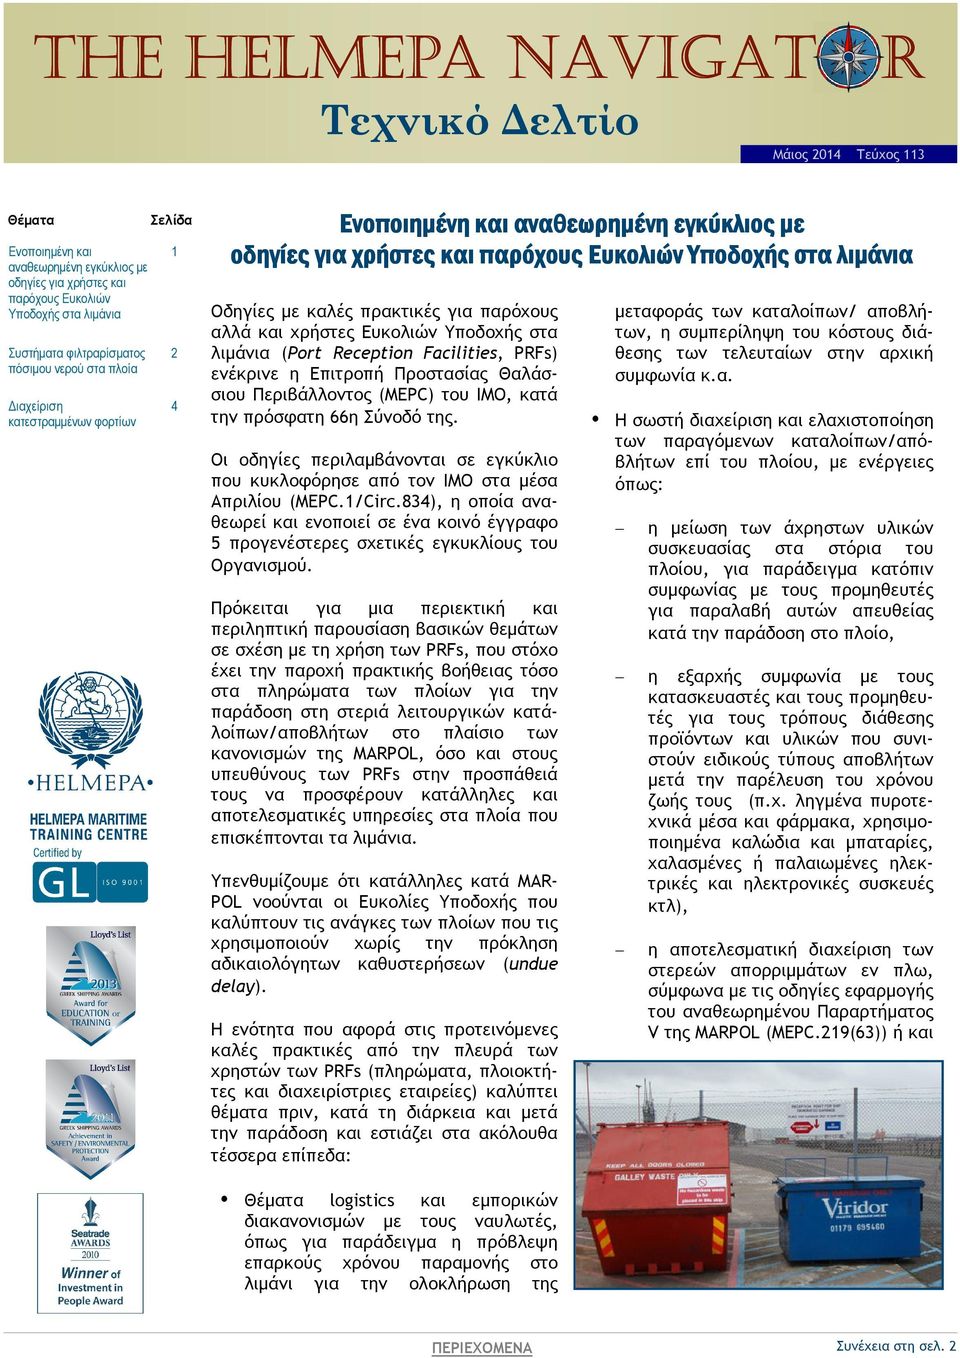 πρακτικές για παρόχους αλλά και χρήστες Ευκολιών Υποδοχής στα λιµάνια (Port Reception Facilities, PRFs) ενέκρινε η Επιτροπή Προστασίας Θαλάσσιου Περιβάλλοντος (MEPC) του ΙΜΟ, κατά την πρόσφατη 66η